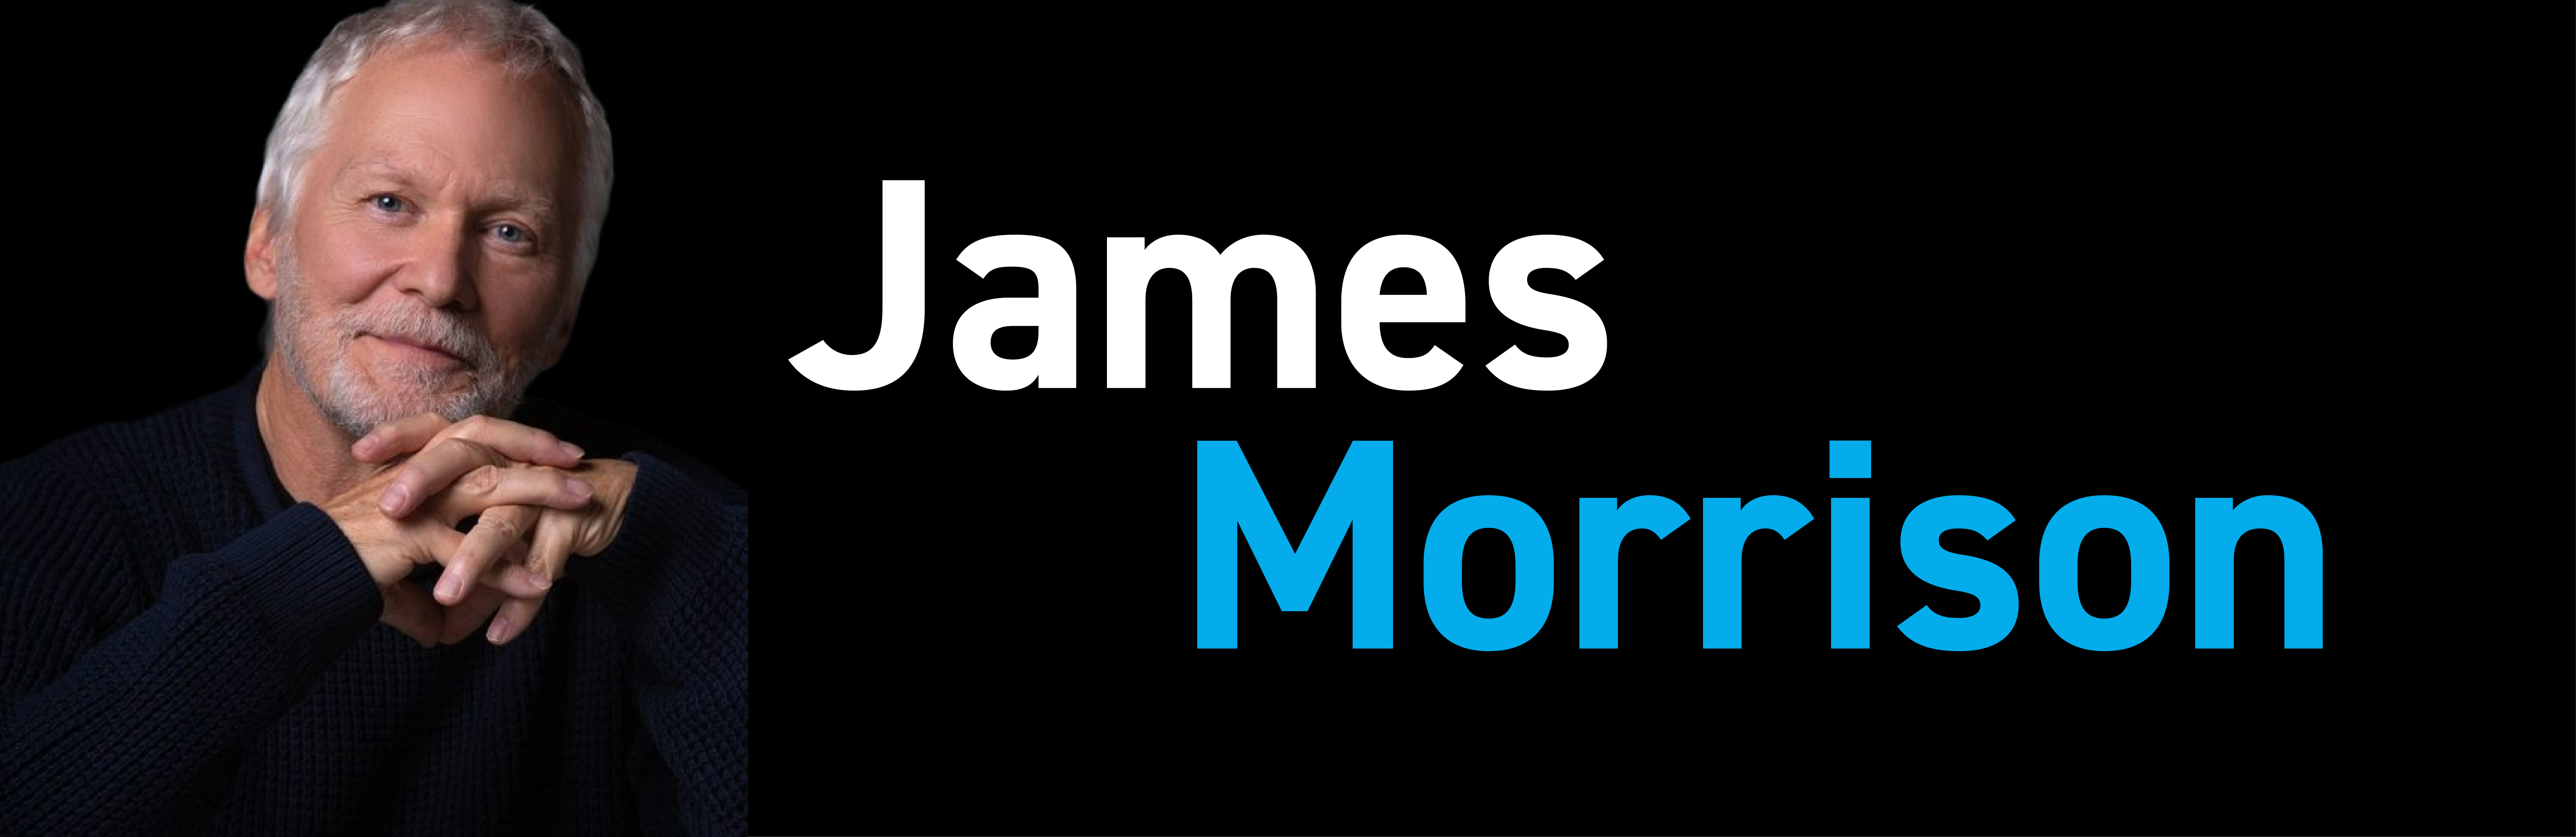 James Morrison Image